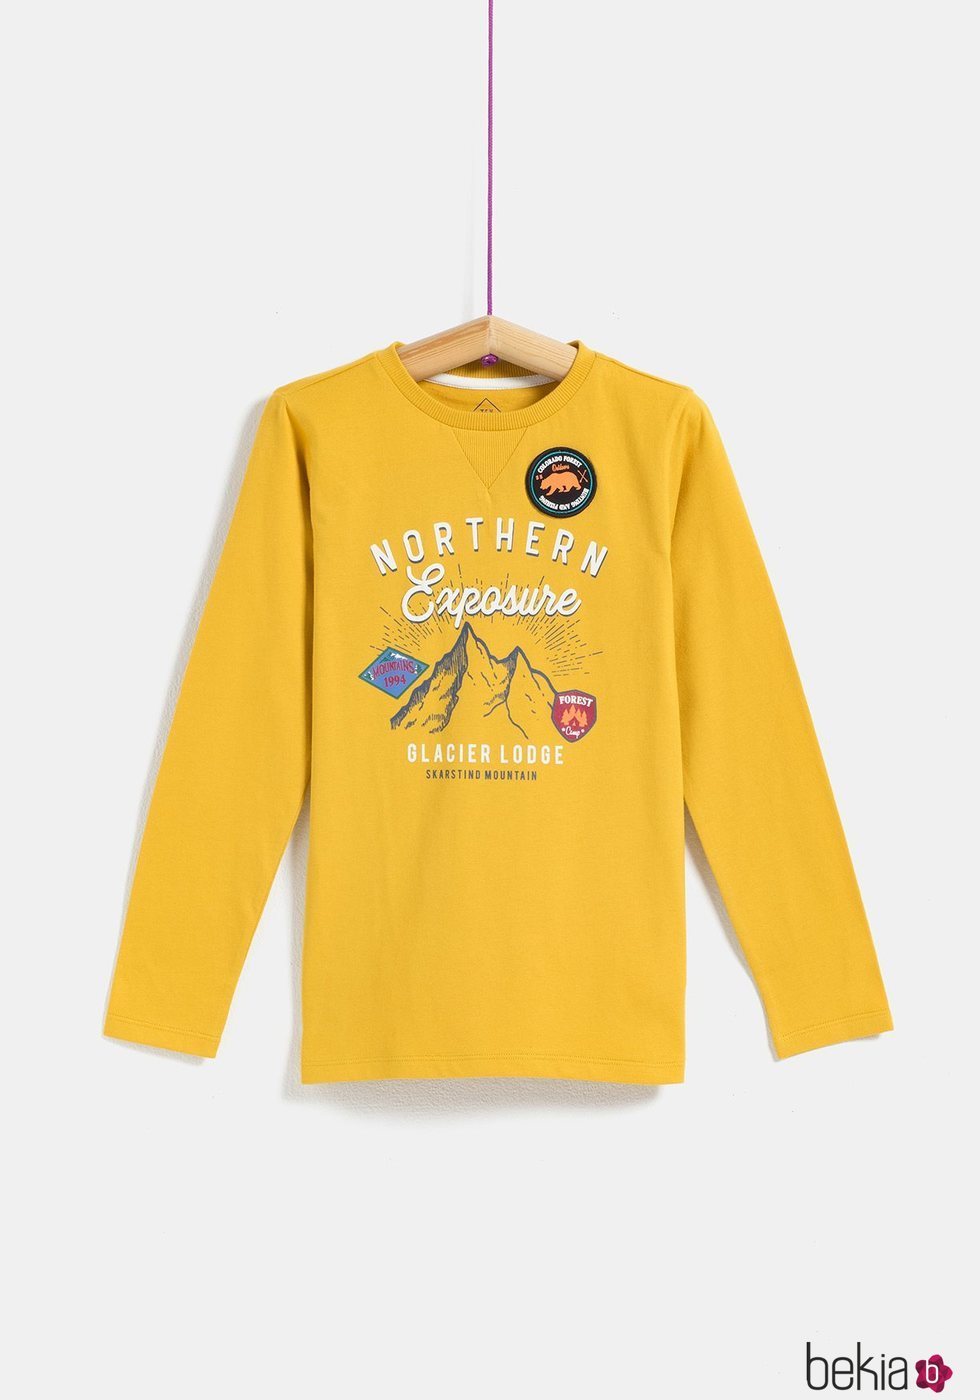 Camiseta amarilla 'Nothern Exposure' de niño de la colección 'I-O' de Carrefour y TEX para otoño/invierno 2019